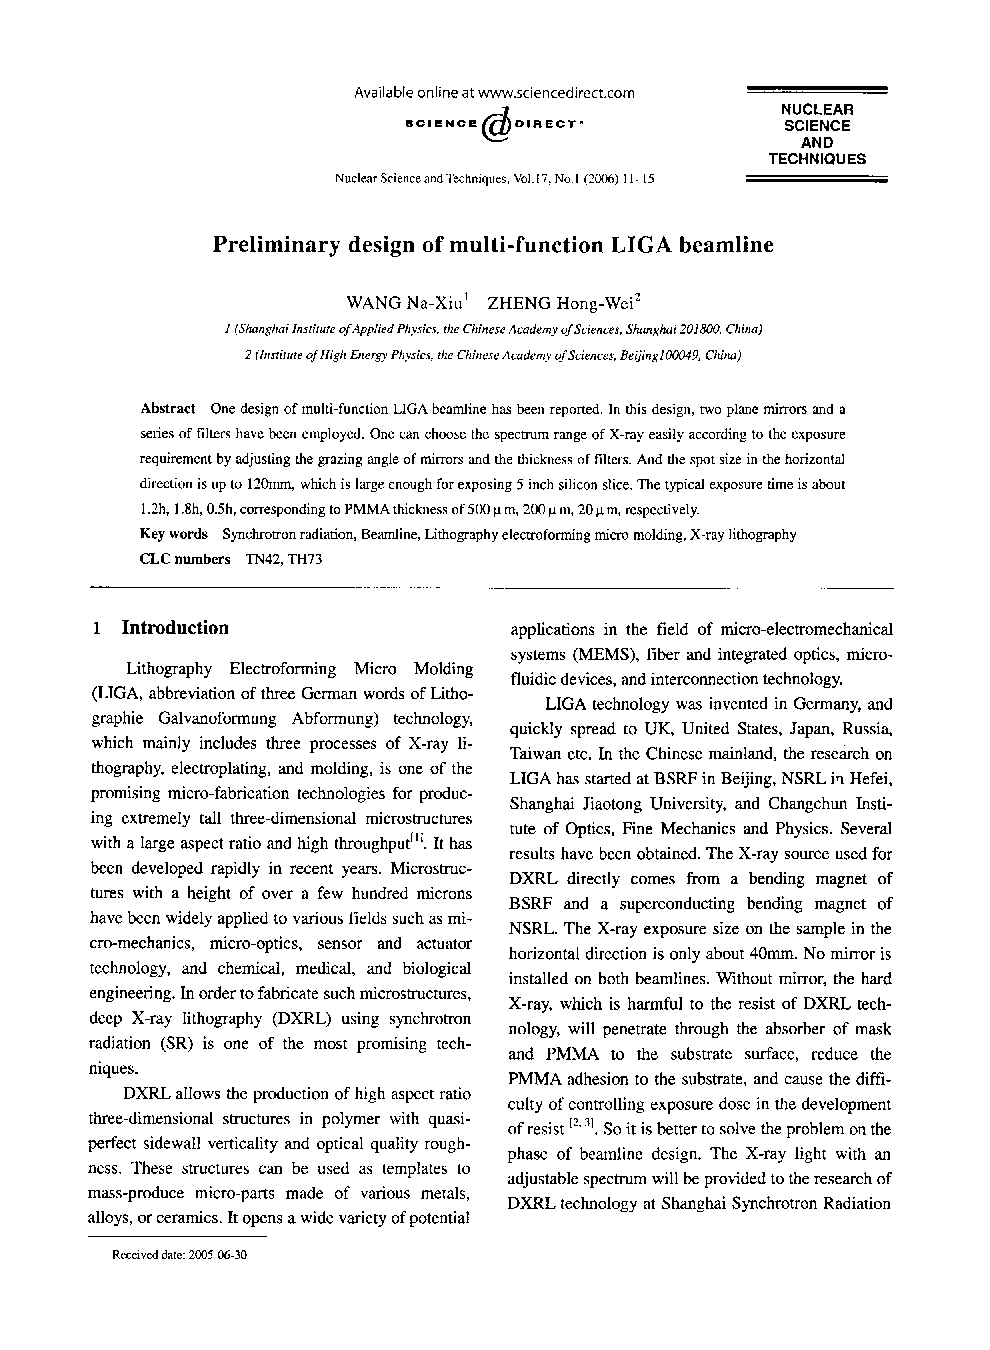 Preliminary design of multi-function LIGA beamline